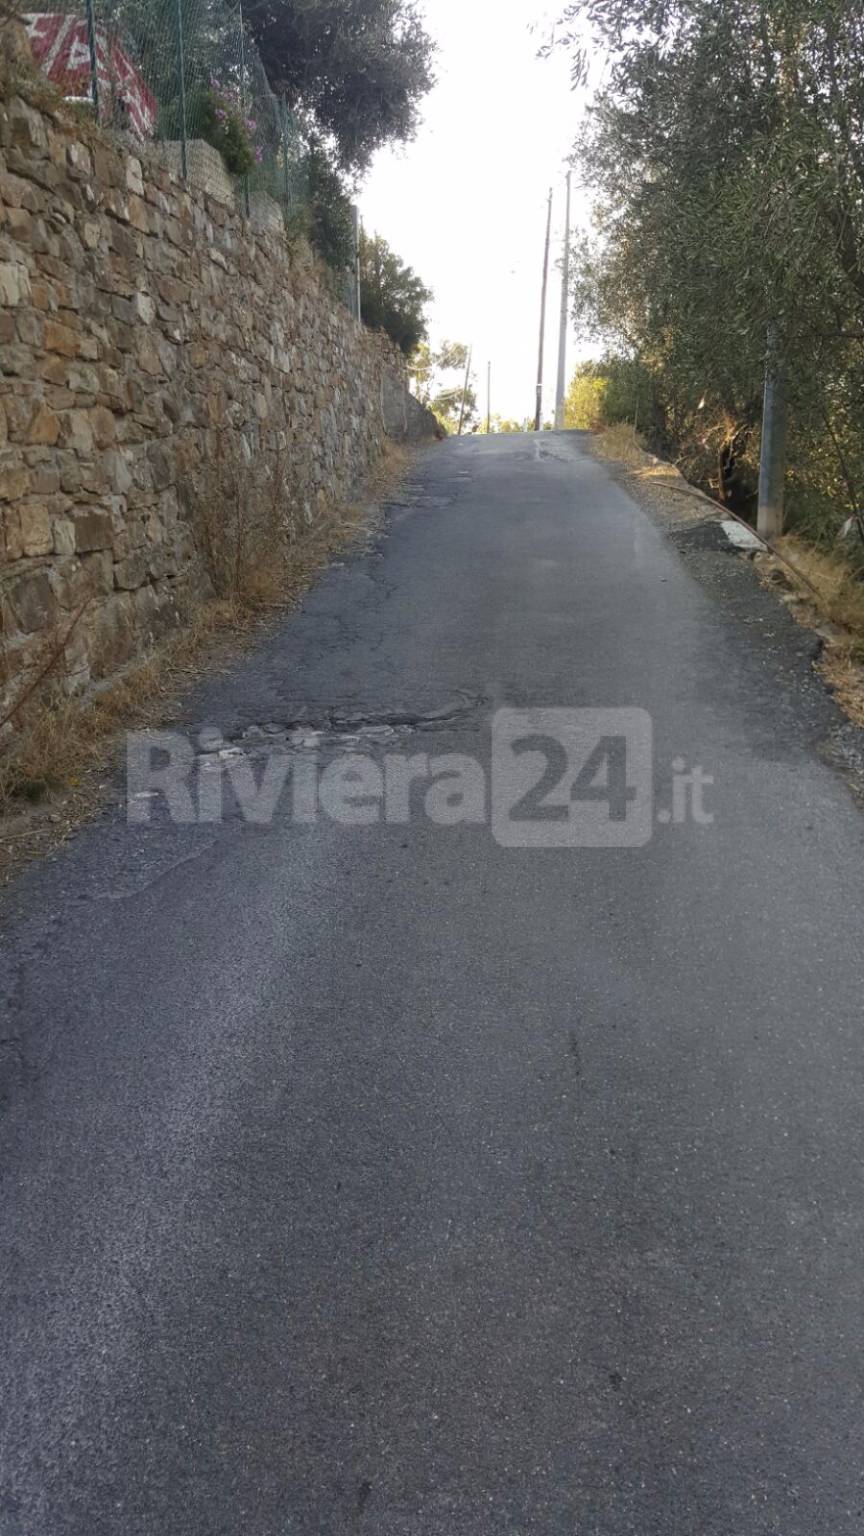 riviera 24 - sanremo Strada carrozzabile San Pietro piena di buche e senza protezione a valle